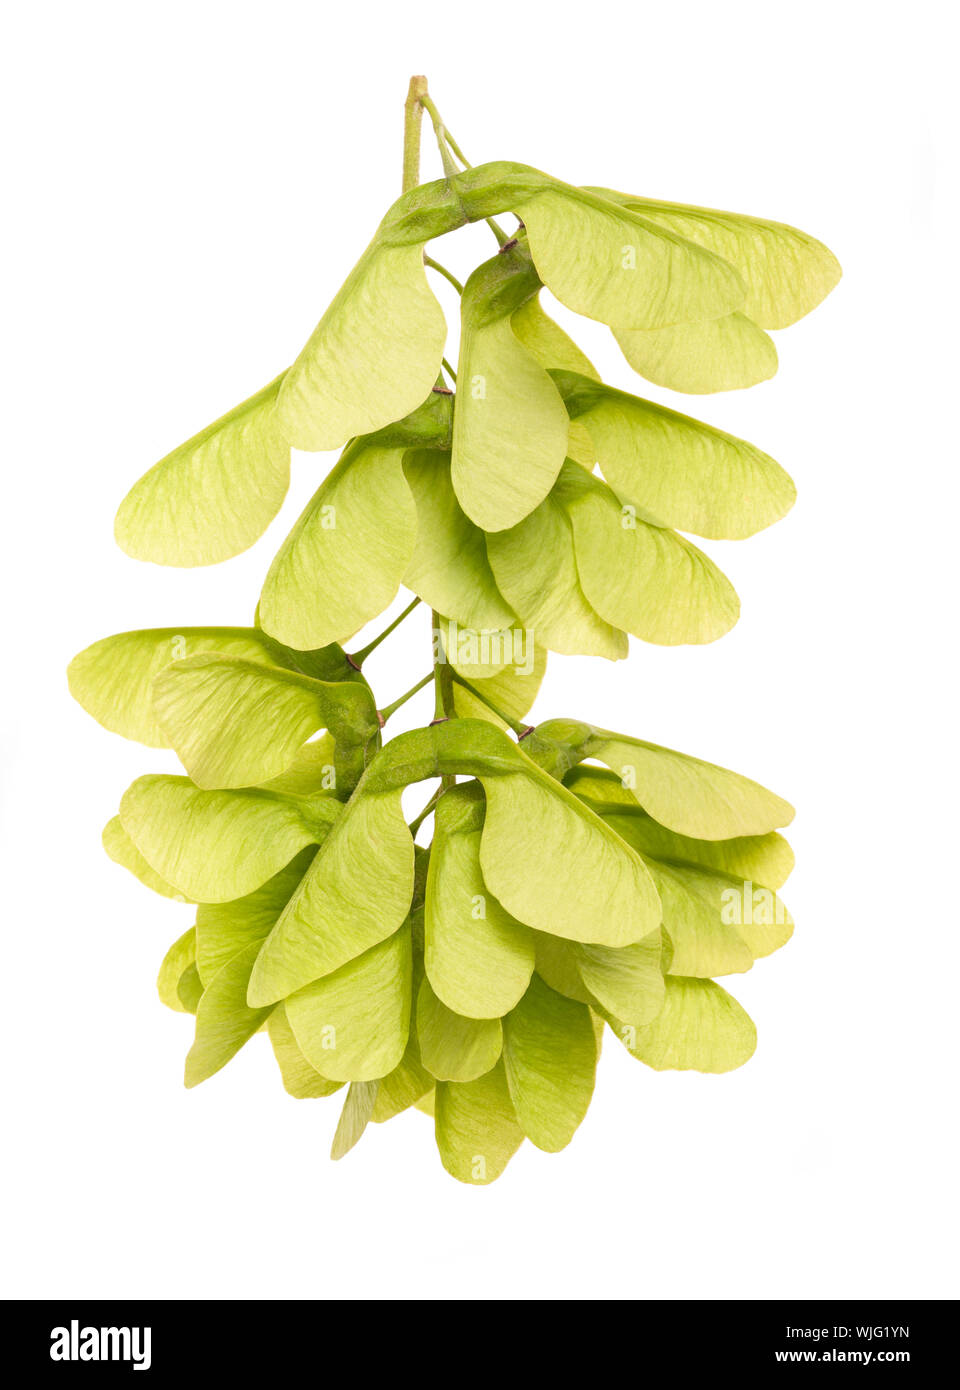 Green Maple fruits ( samara ) isolated on white background Stock Photo